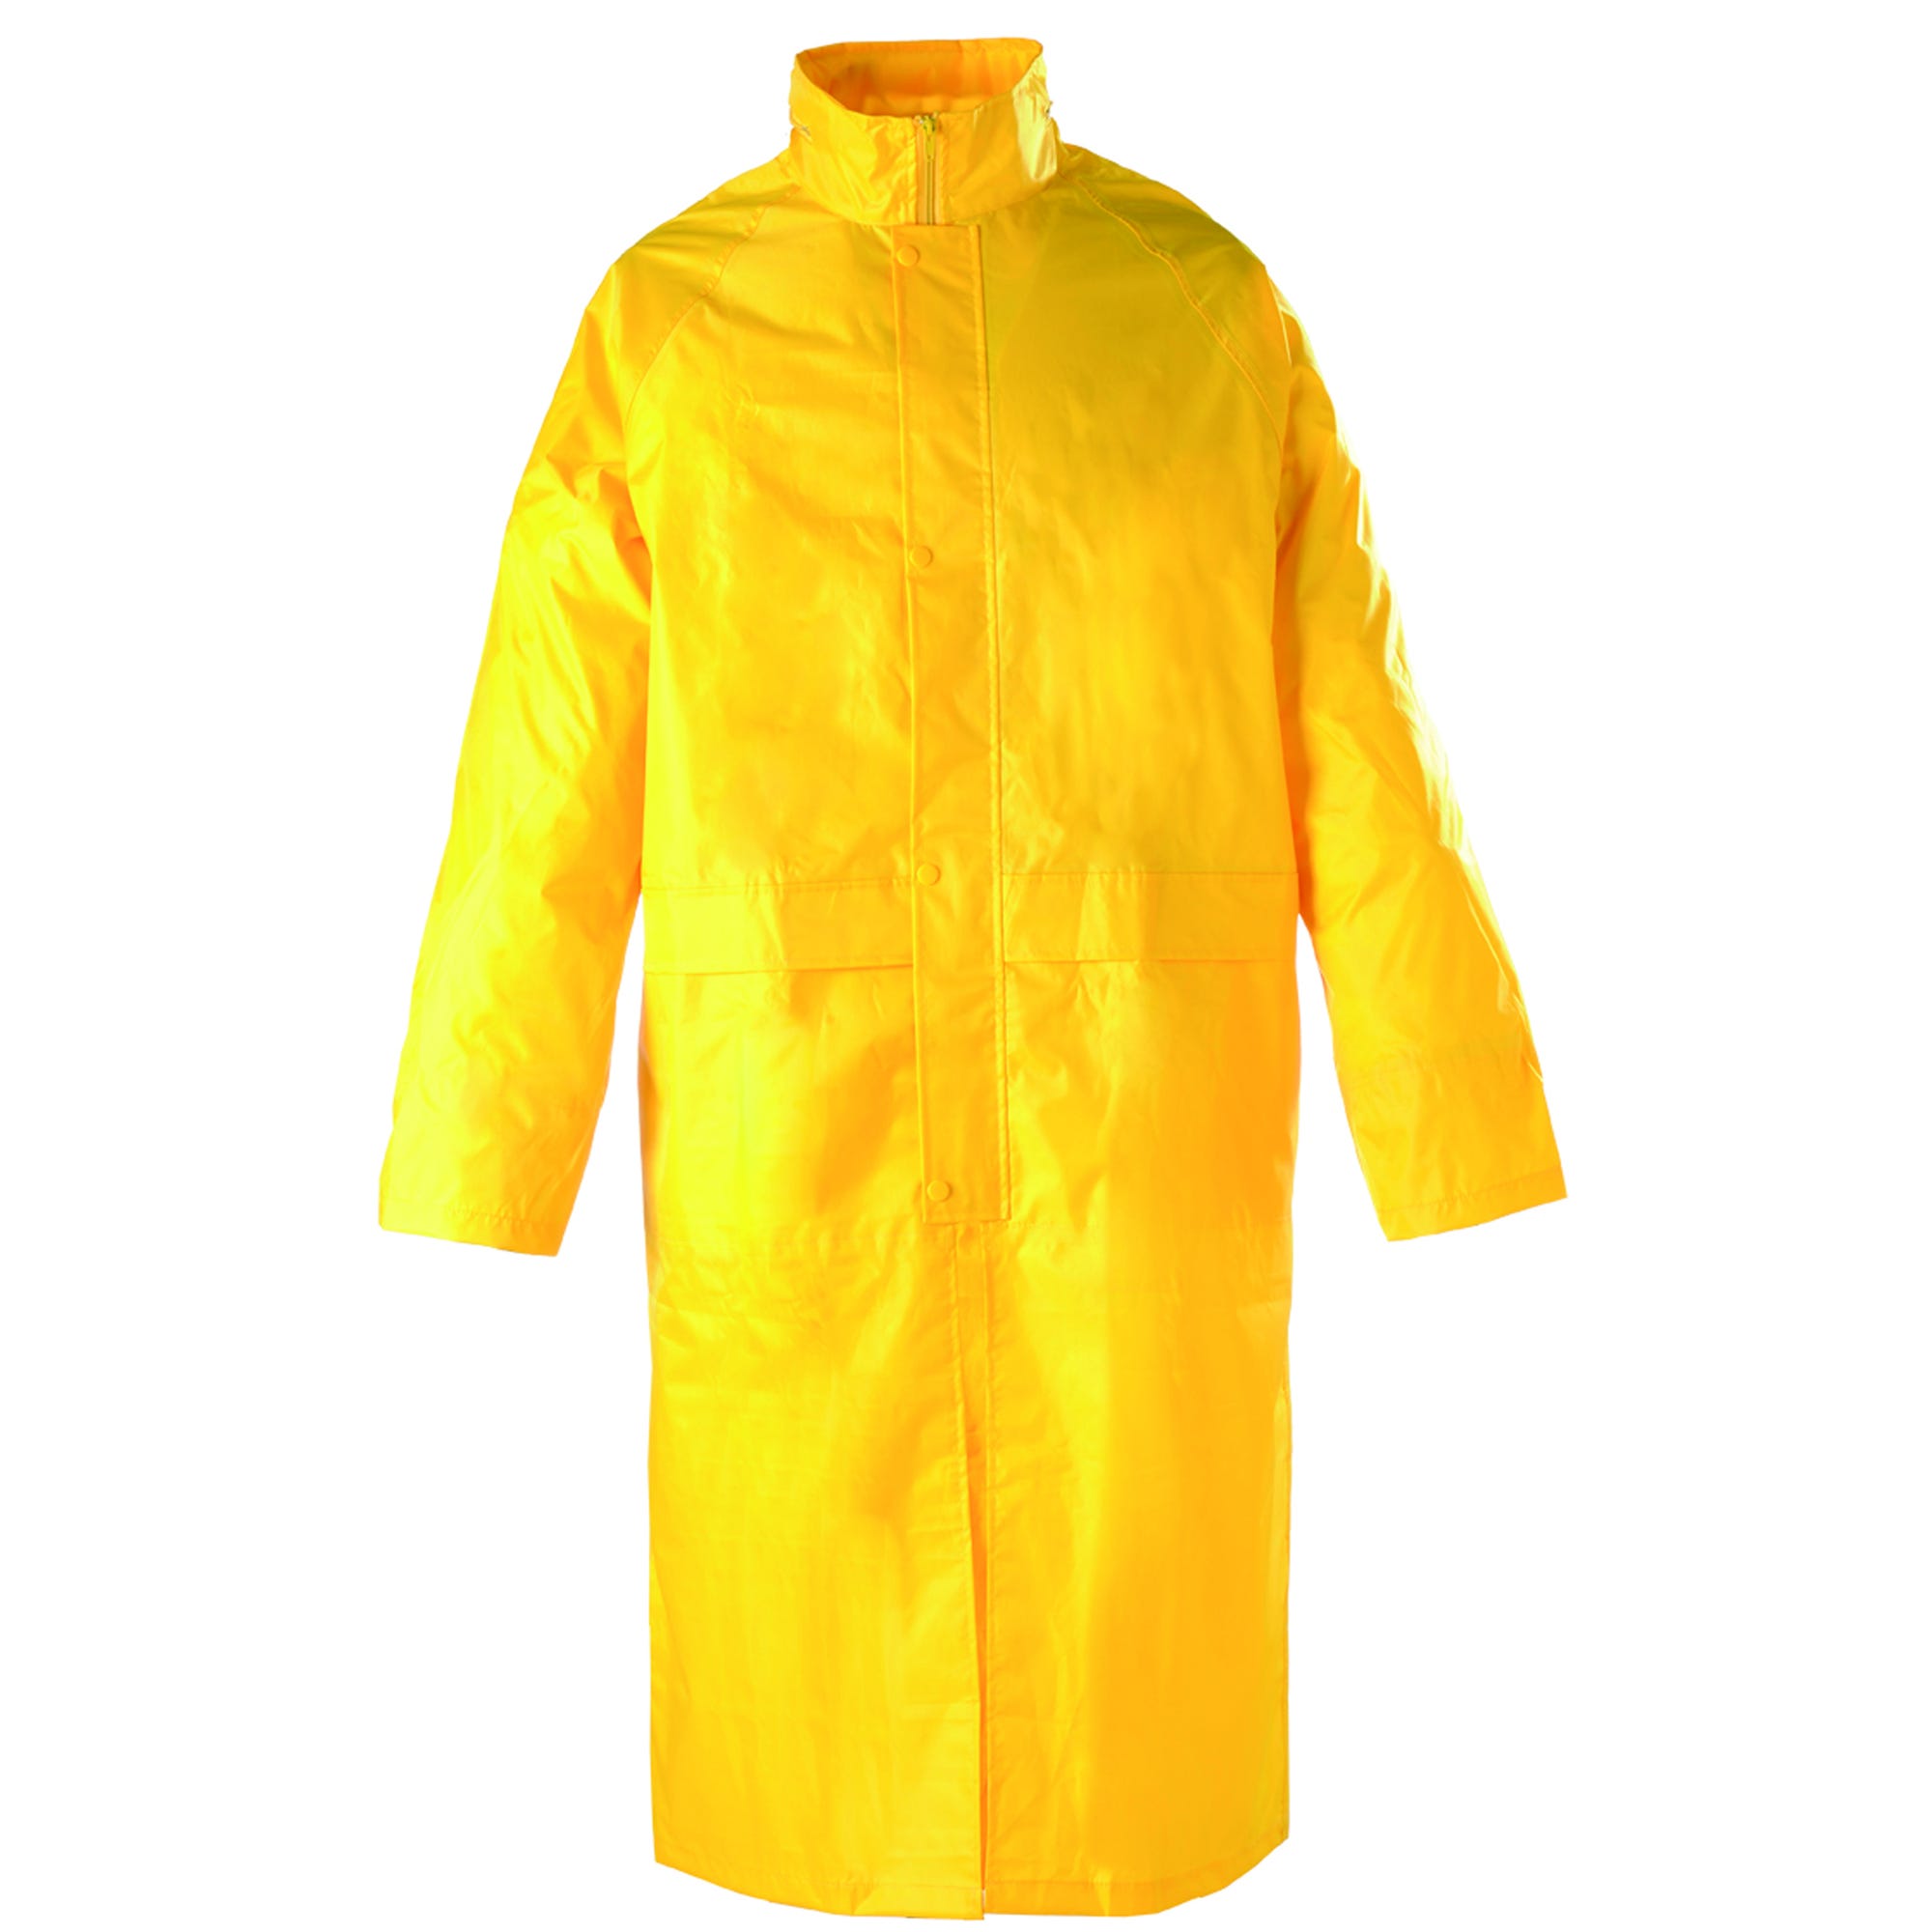 Manteau de pluie PVC, jaune, 185g/m² - COVERGUARD - Taille 2XL 1